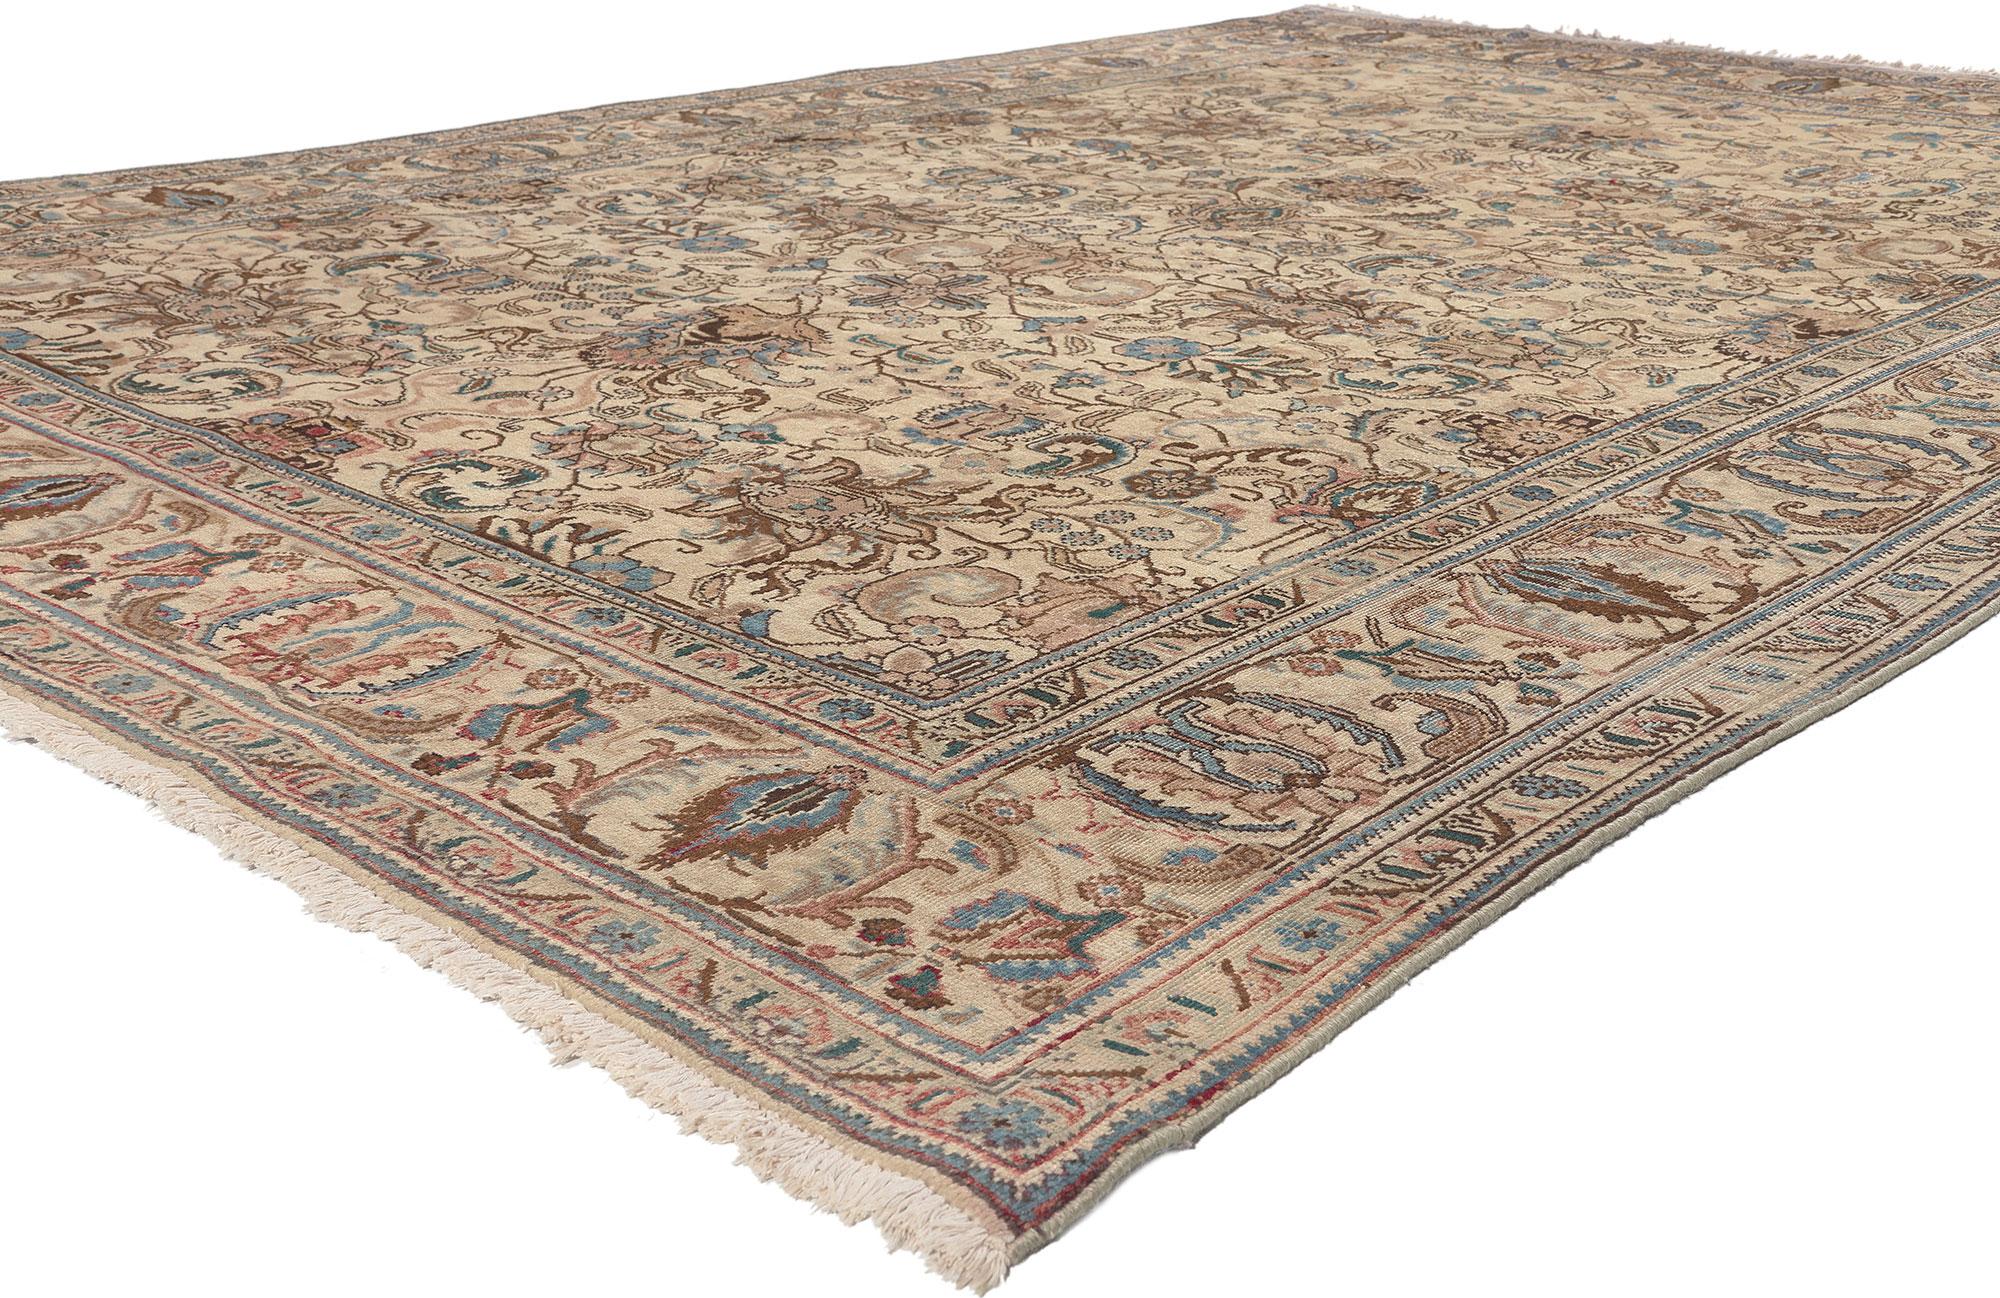 75518 Tapis Persan Vintage Tabriz de style traditionnel. Ce tapis persan vintage Tabriz en laine nouée à la main présente un motif général entouré d'une bordure classique, créant un design équilibré et intemporel. Ce tapis persan vintage Tabriz